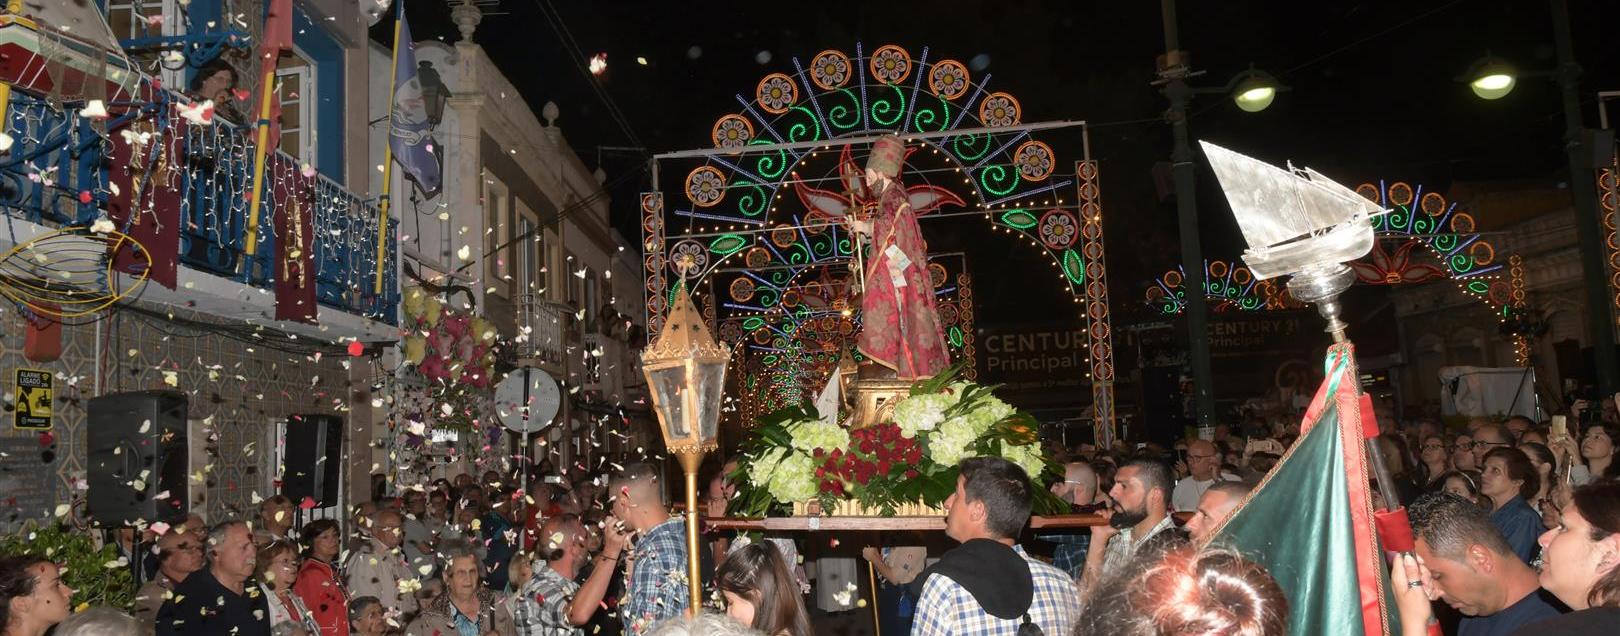 Cancelamento da edição de 2020 das Festas Populares de S. Pedro